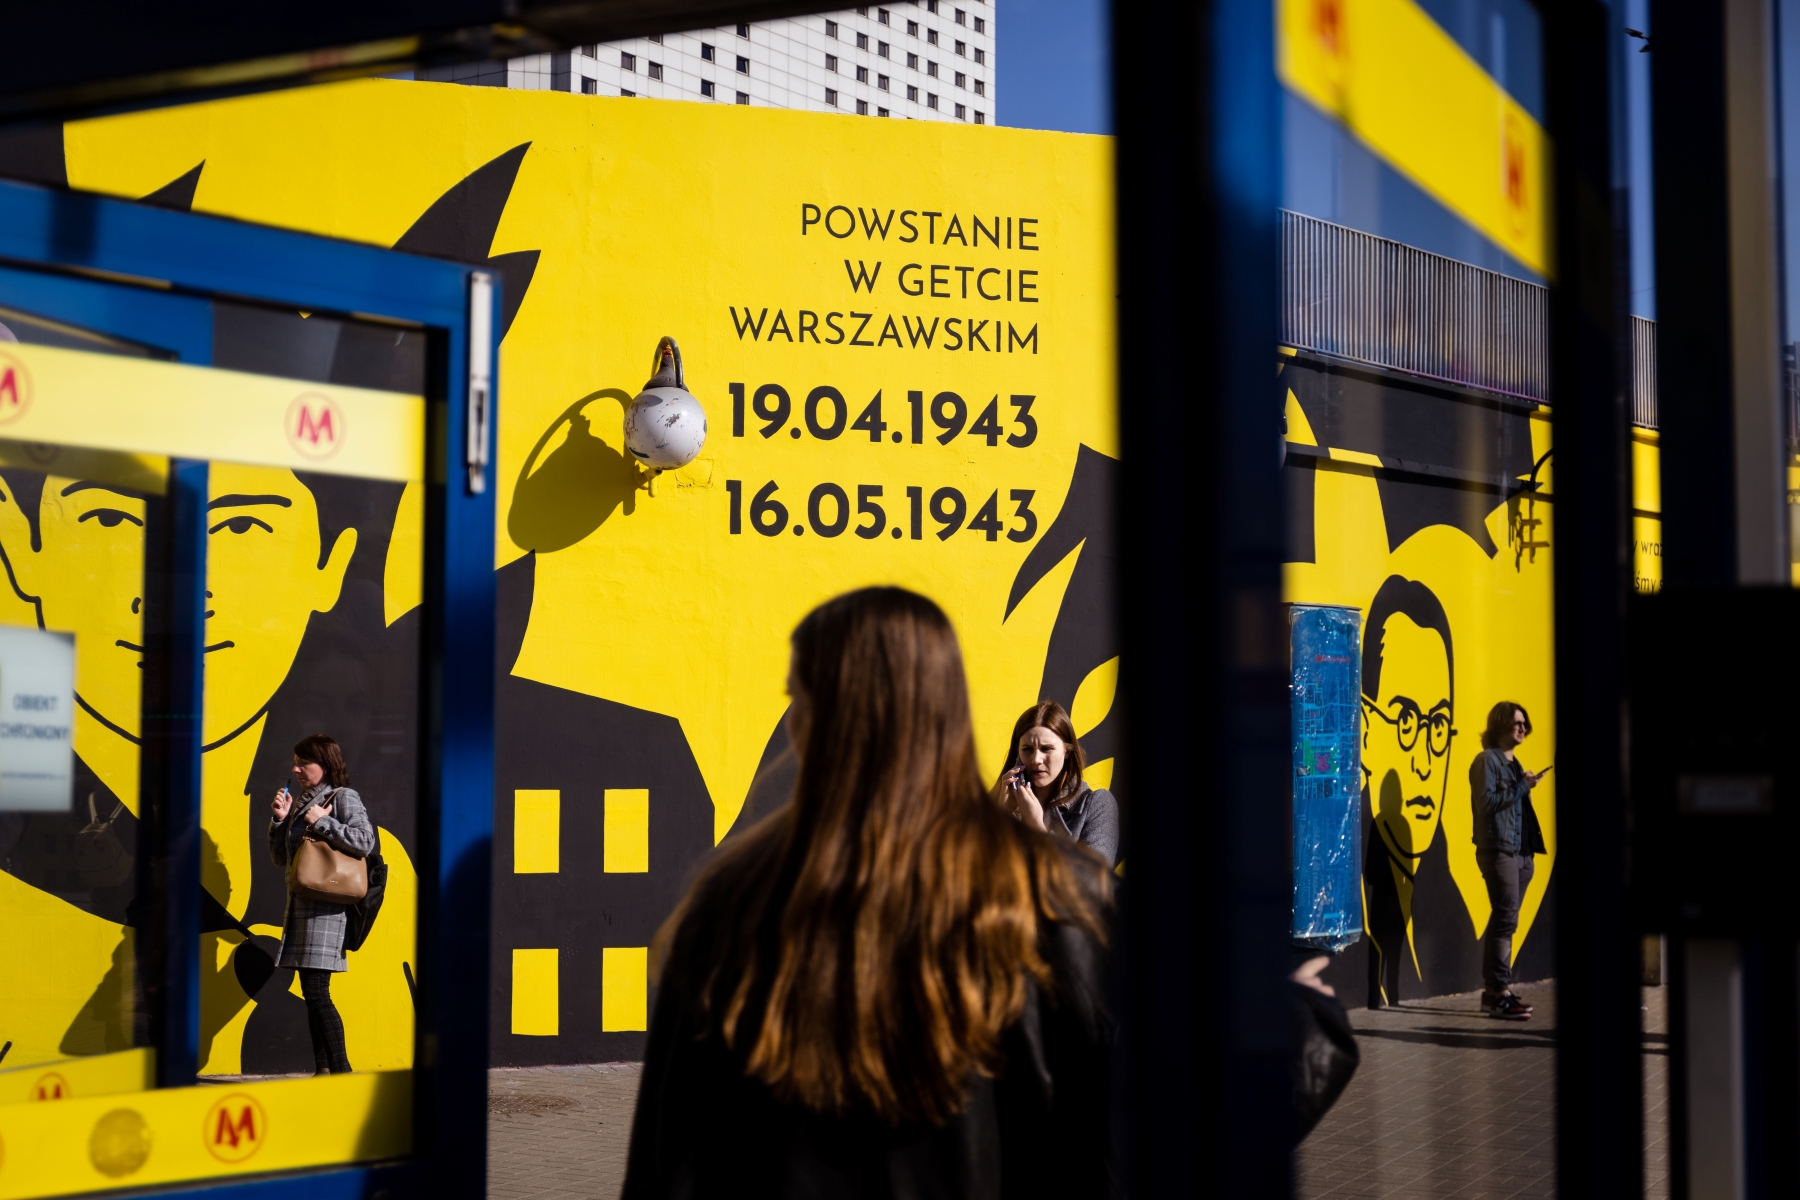 Dziewczyna stoi w drzwiach metra Centrum w Warszawie. W tle mural upamiętniający cywilów podczas powstania w getcie warszawskim.